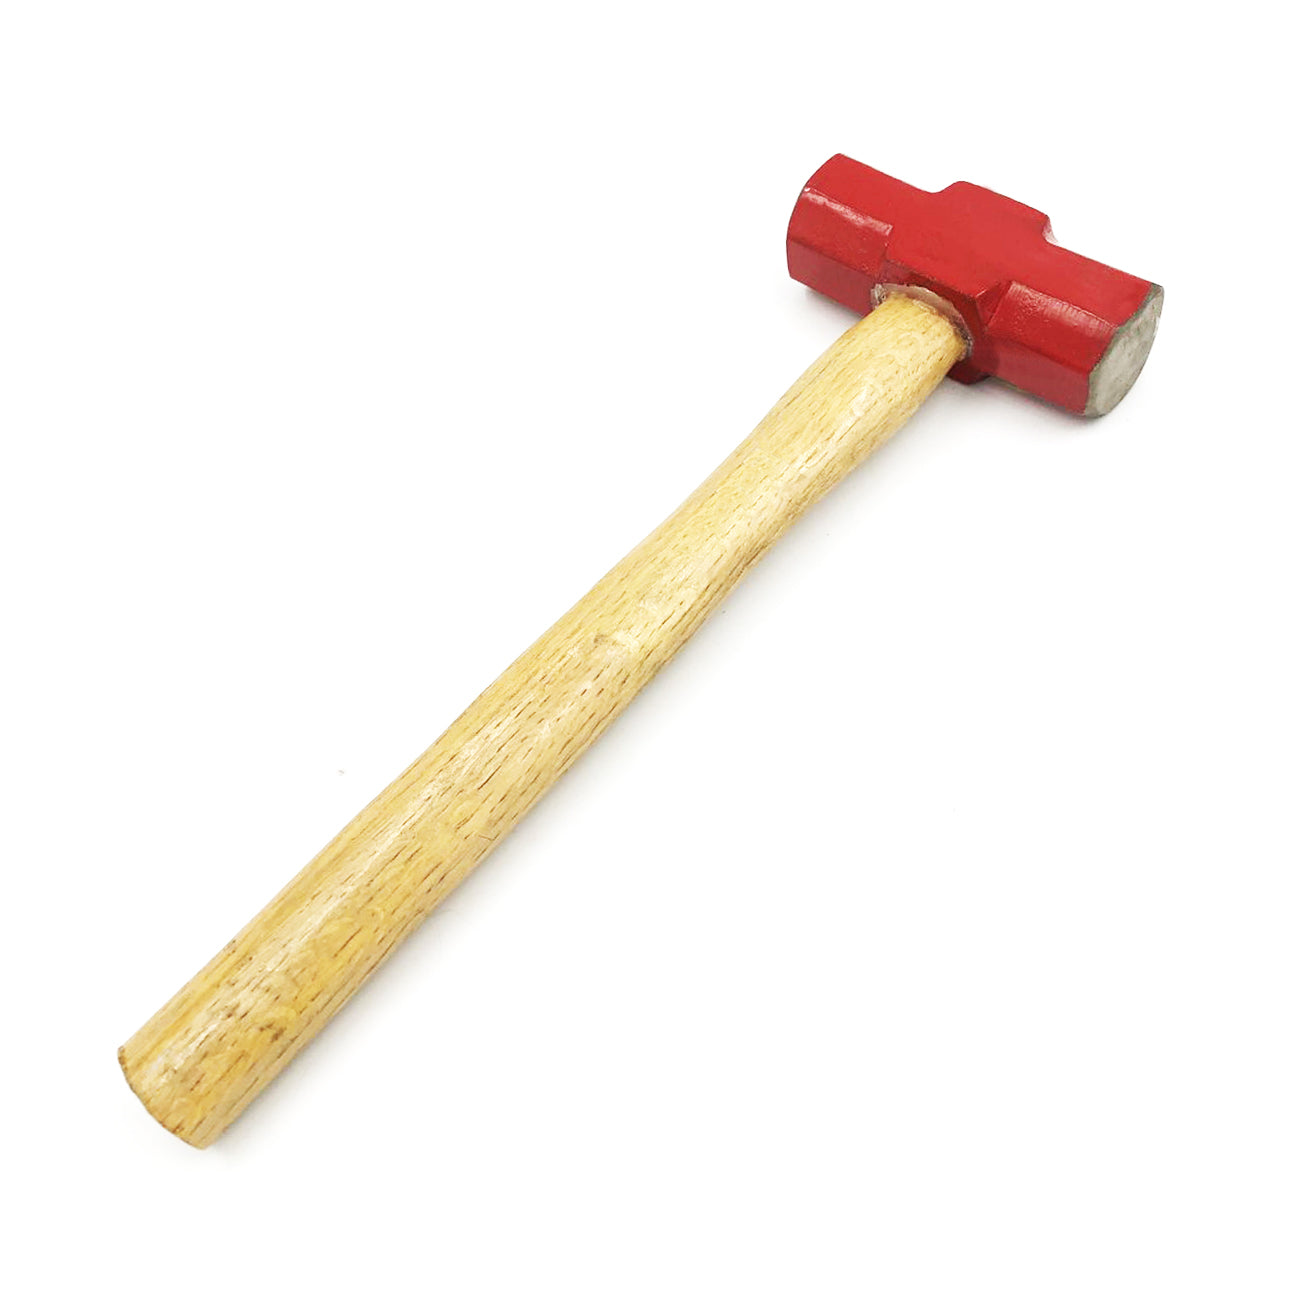 Sledge Hammer (4 Lb)